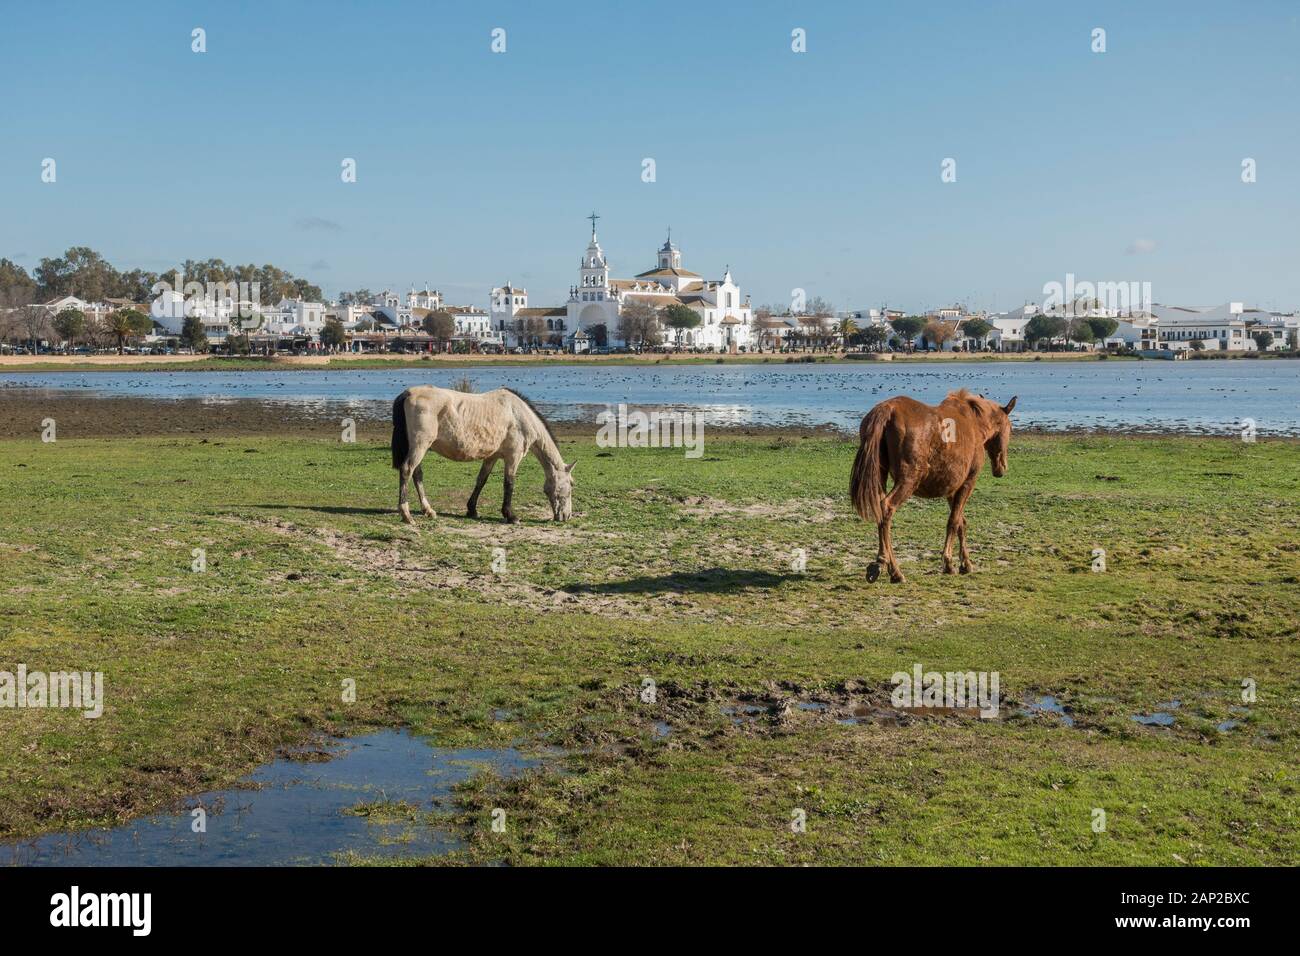 Au semi chevaux sauvages du parc National de Doñana, marismas El Rocio église dans l'arrière-plan, Andalousie, Espagne, Europe Banque D'Images